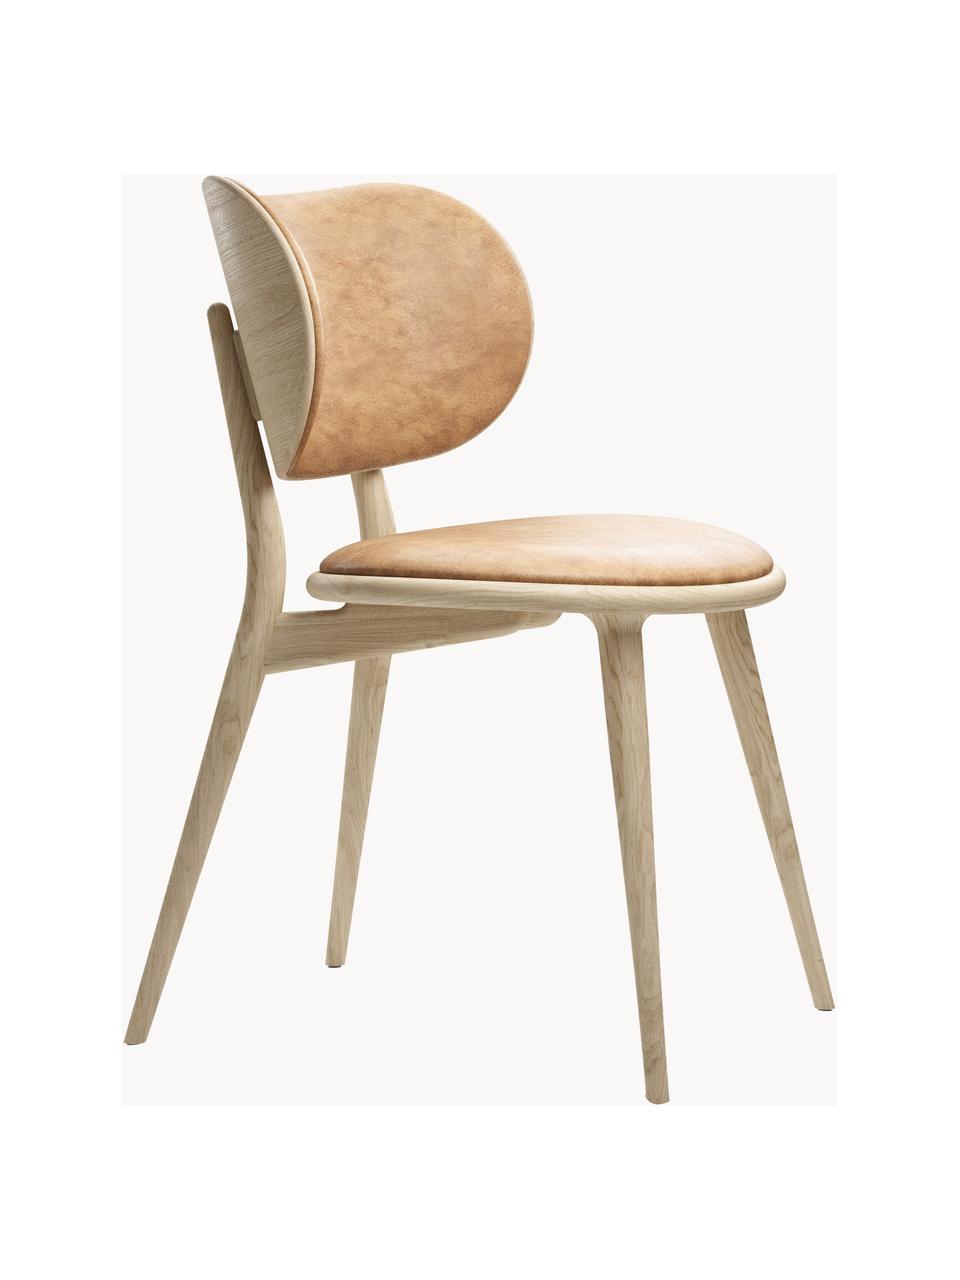 Kožená stolička s drevenými nohami Rock, Koža béžová, dubové drevo svetlé, Š 52 x H 44 cm